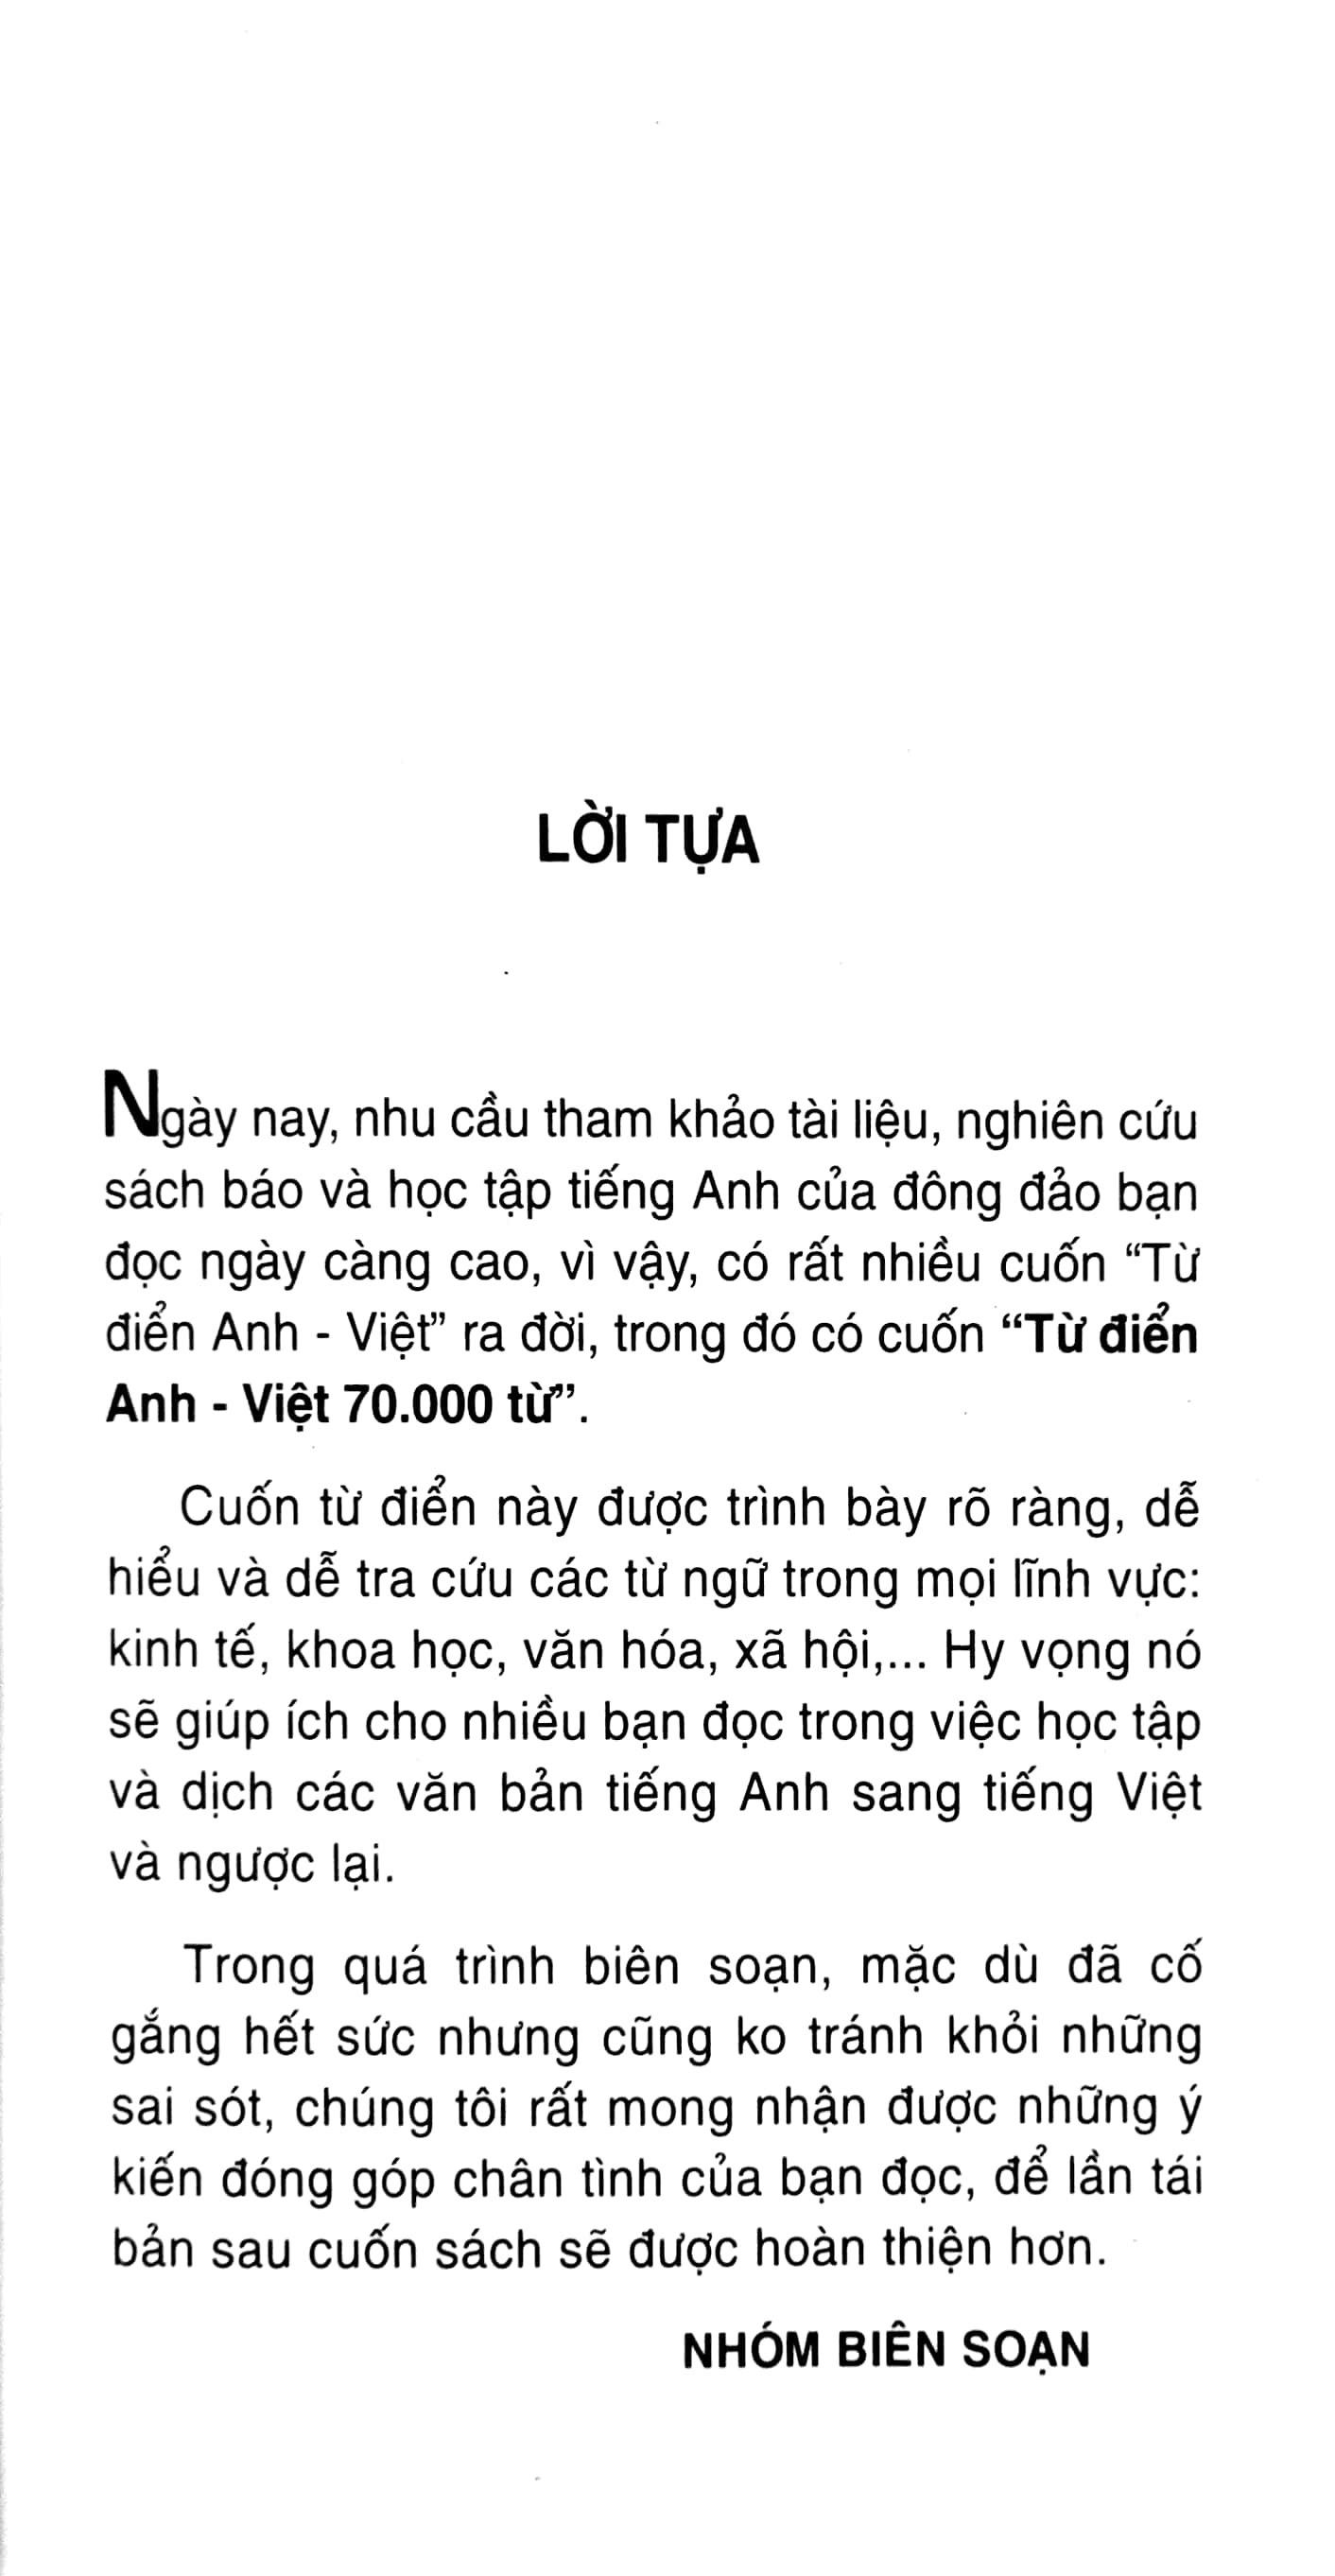 Từ Điển Anh - Việt Khoảng 70.000 Mục Từ PDF